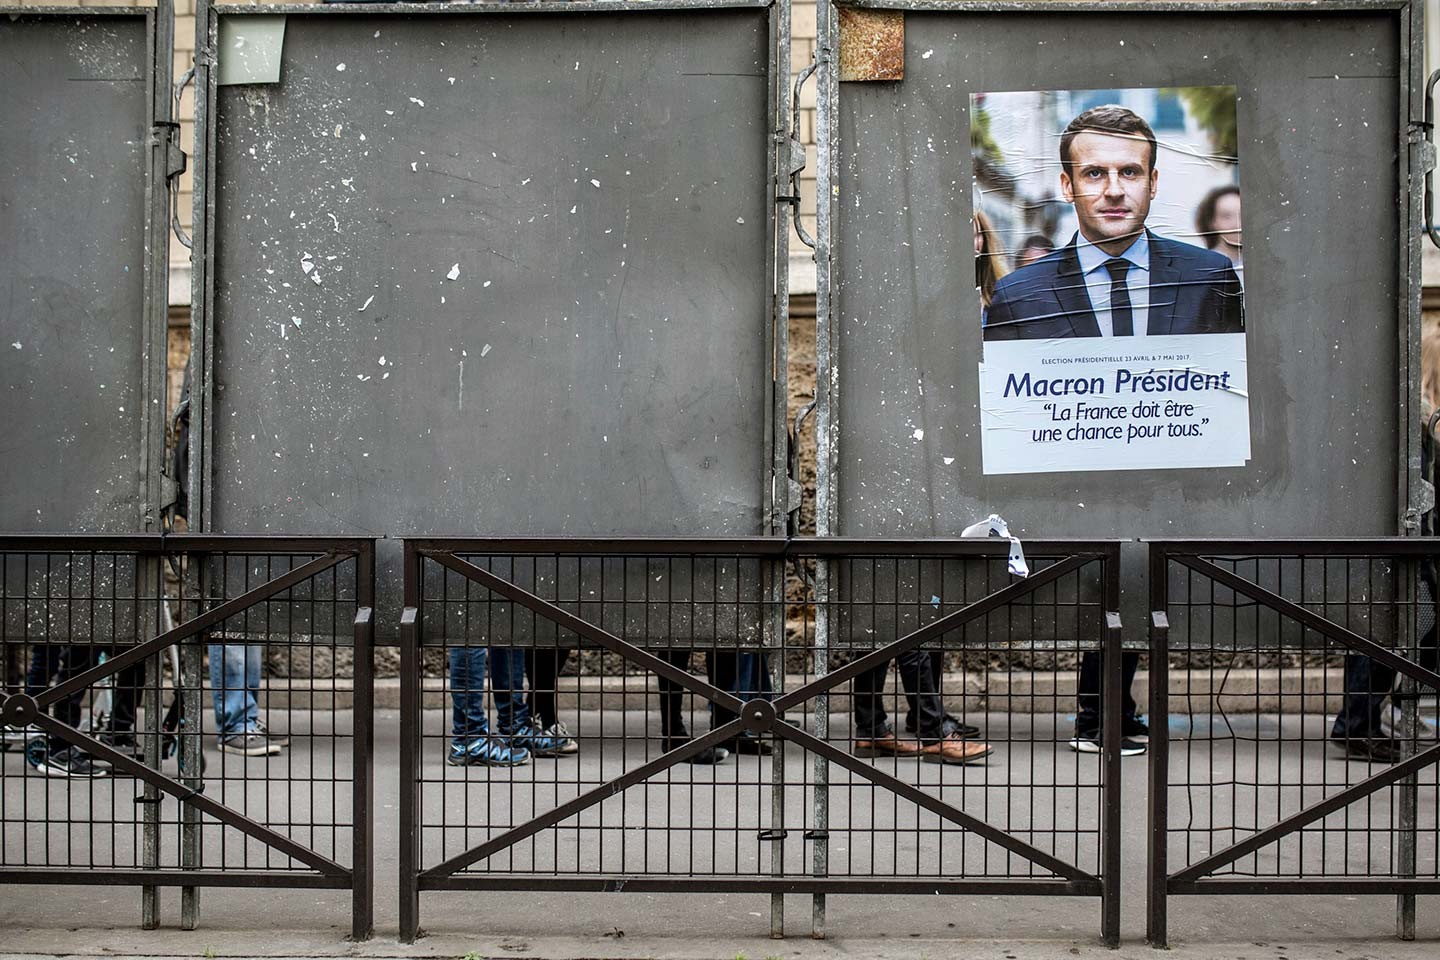 M. Macron, vous êtes bien urbain